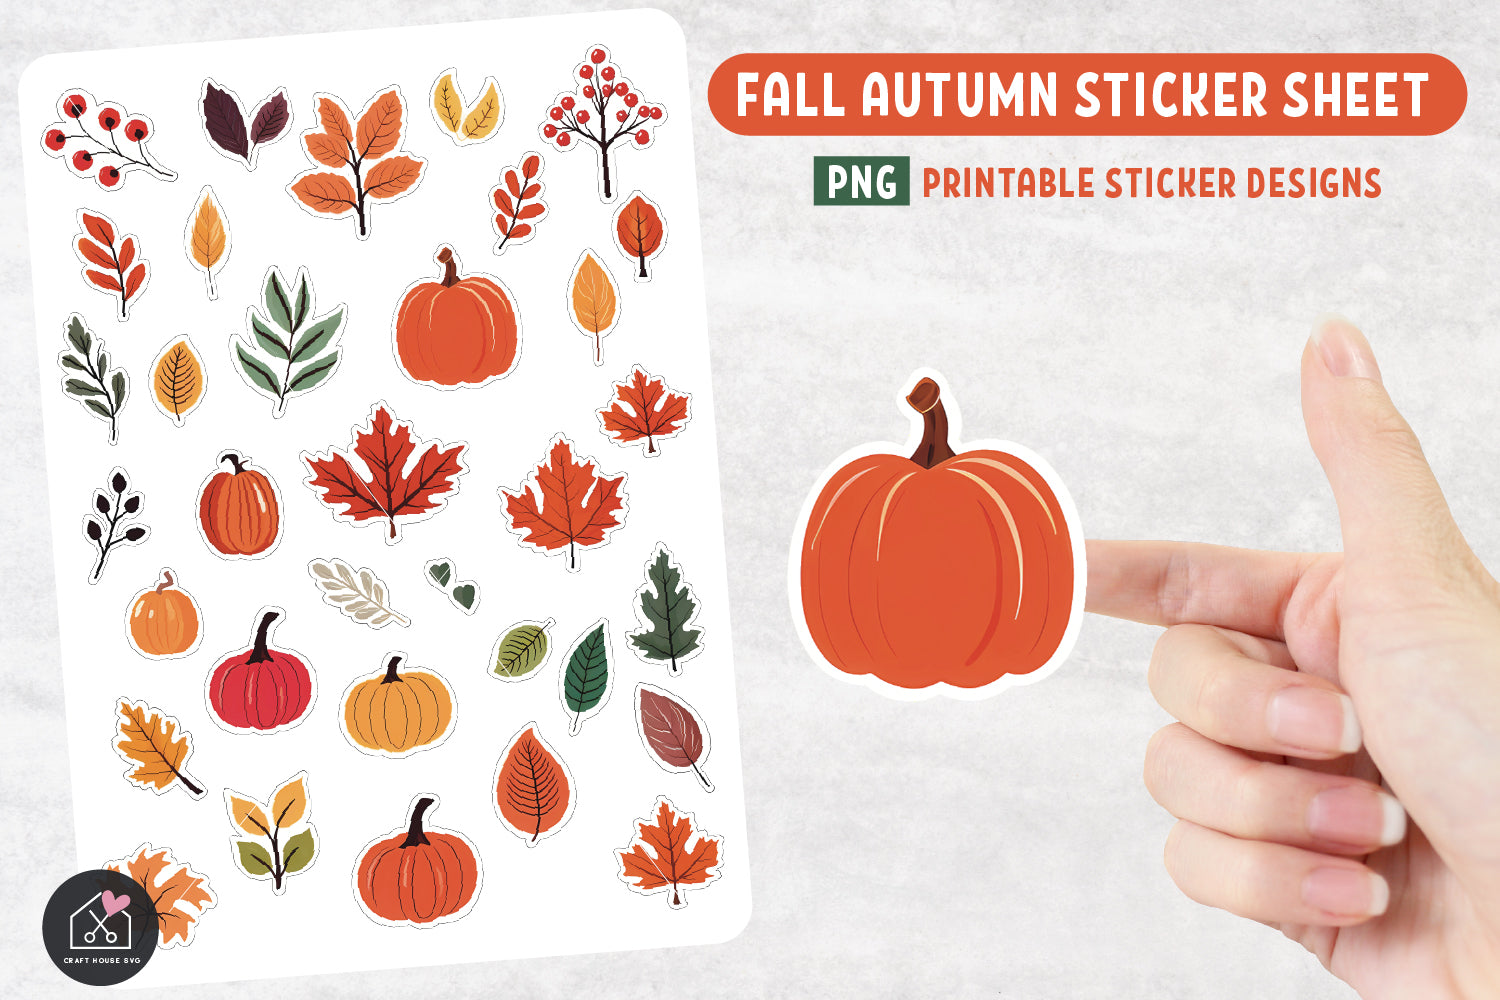 Pumpkins Fall Autumn Leaves Sticker Sheet PNG Print and Cut Sticker Designs